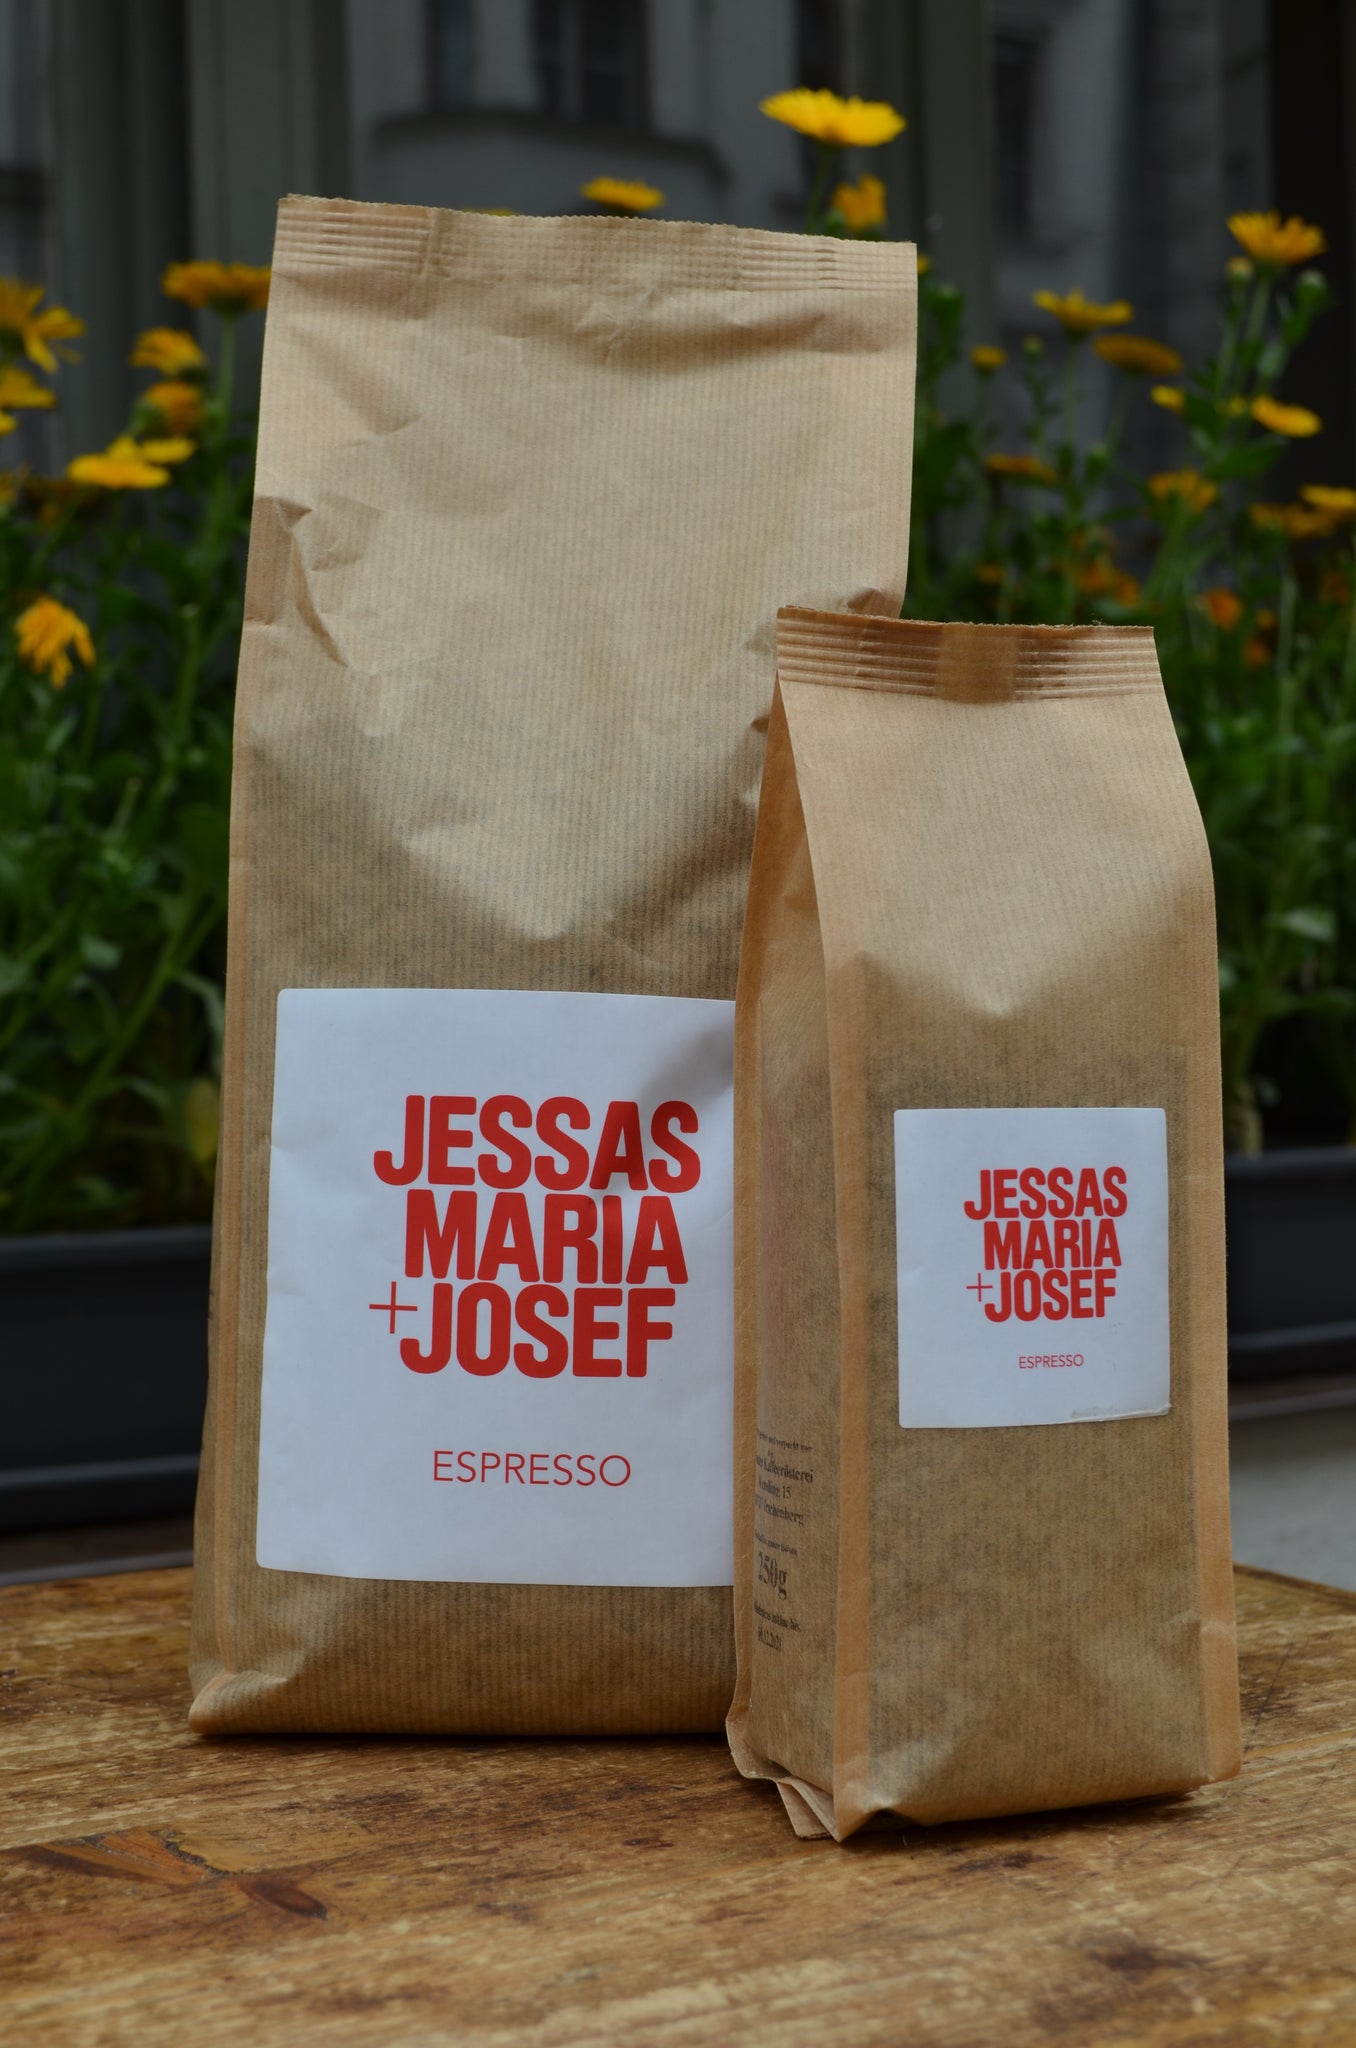 Jessas Maria + Josef Espresso